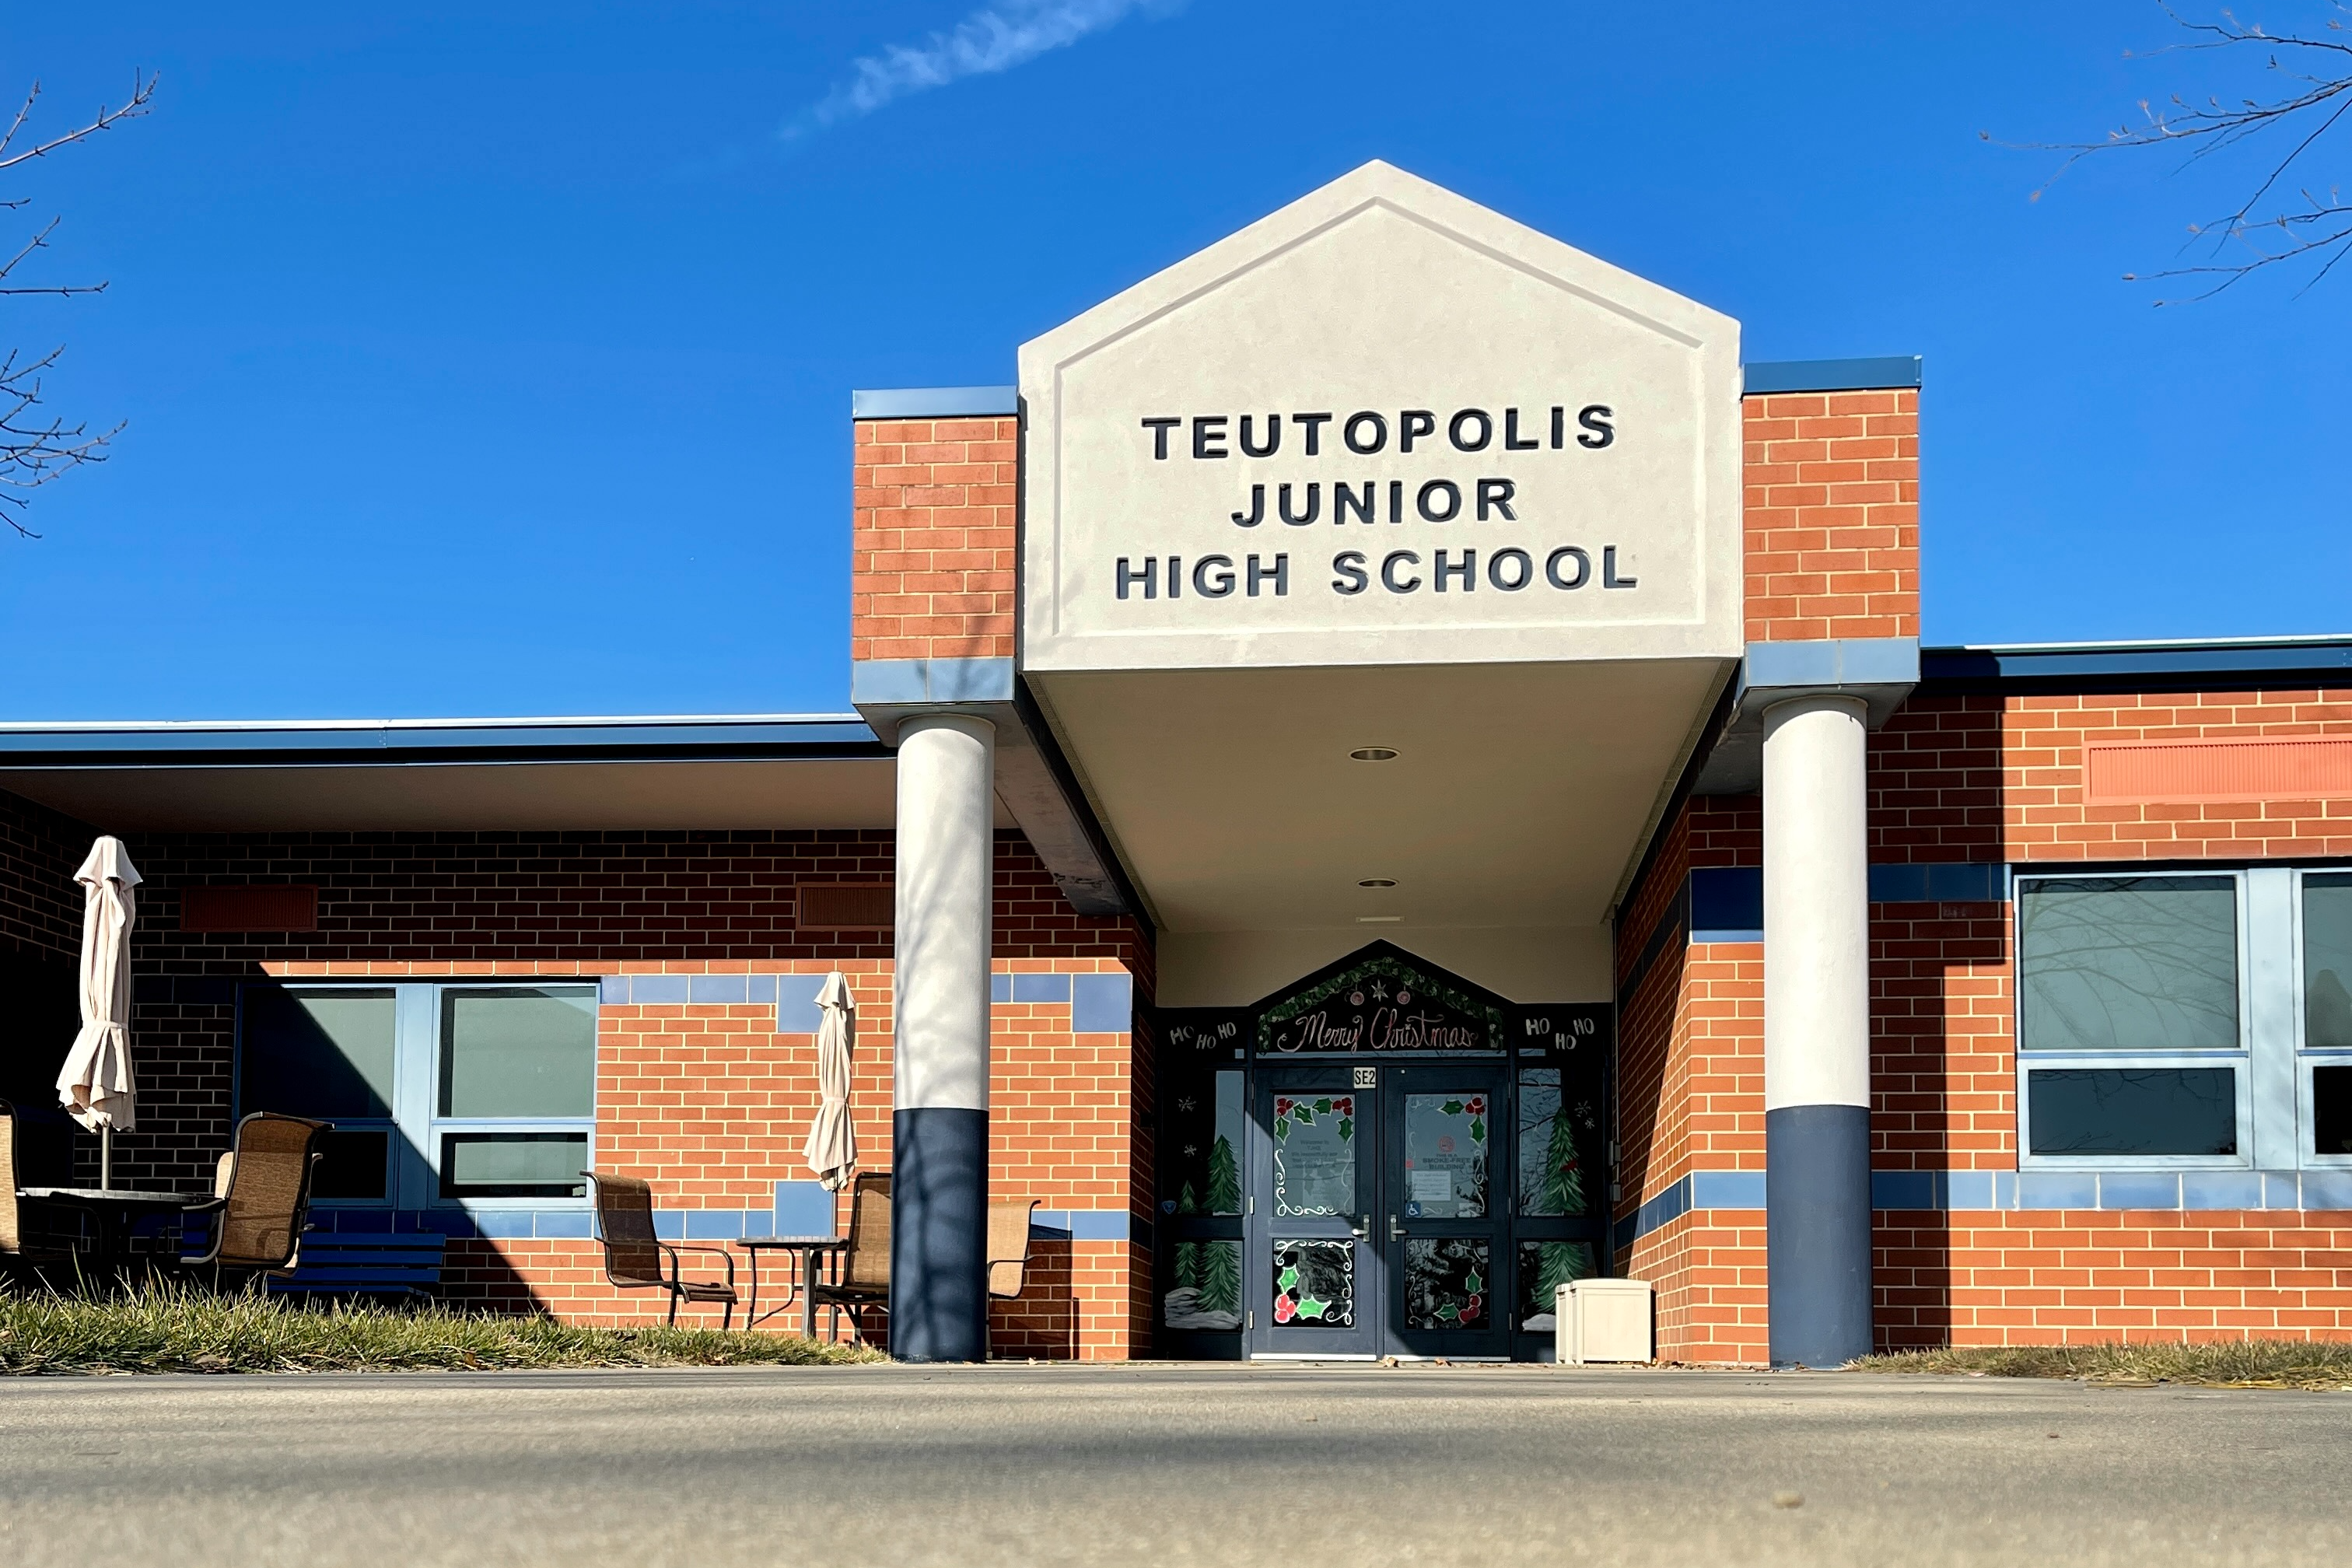 Teutopolis Junior High